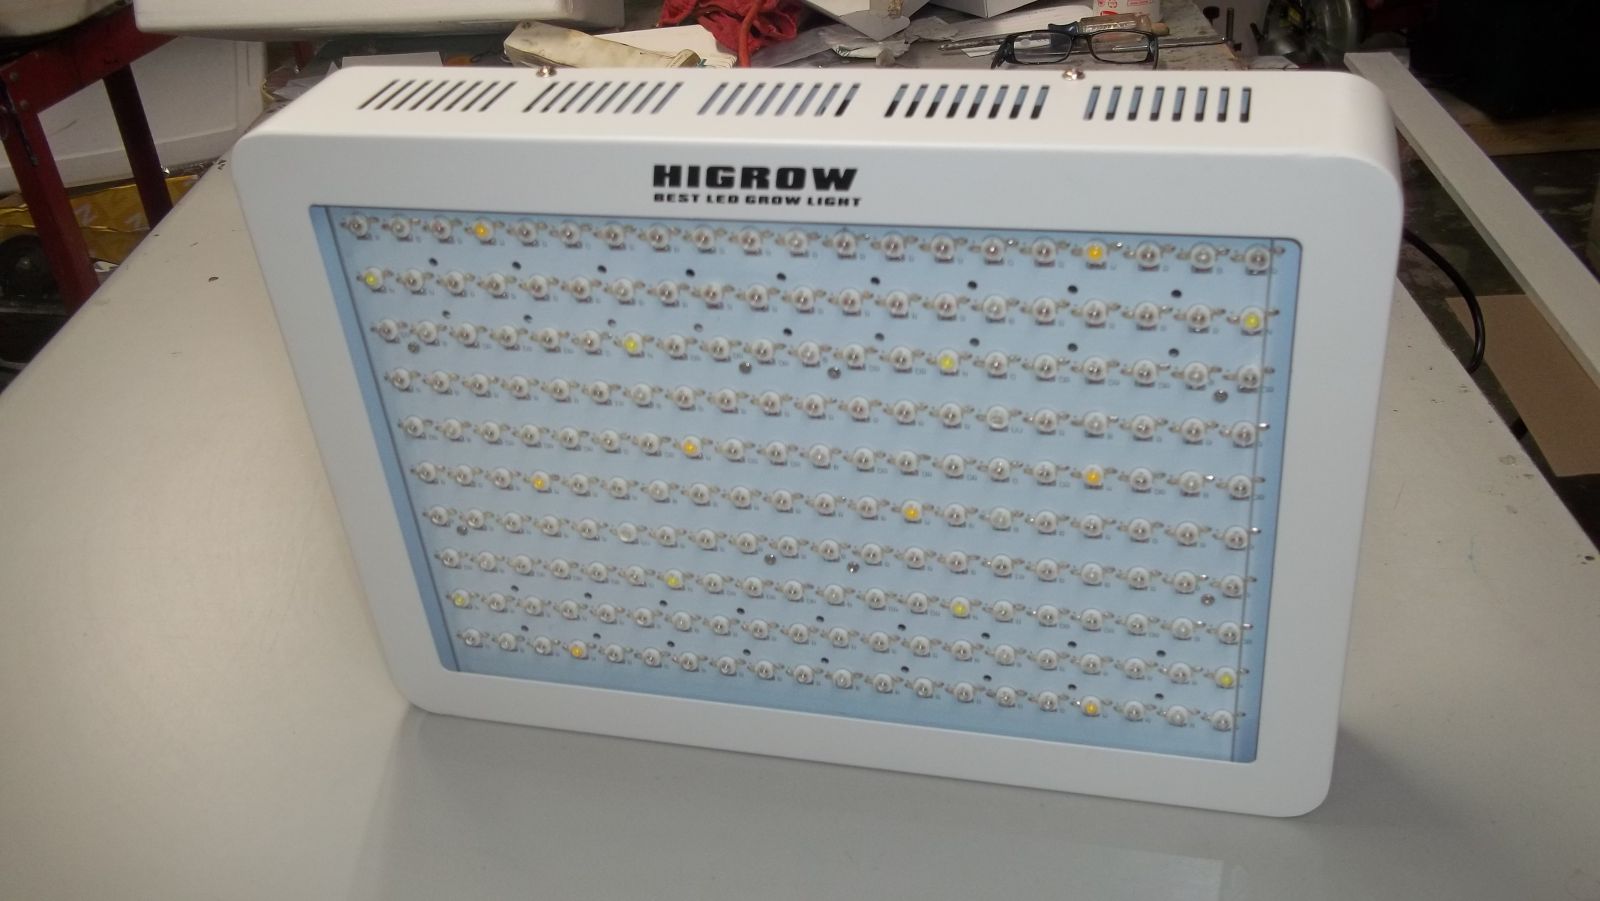 HIGHGROW 2000 watt LED grow light review